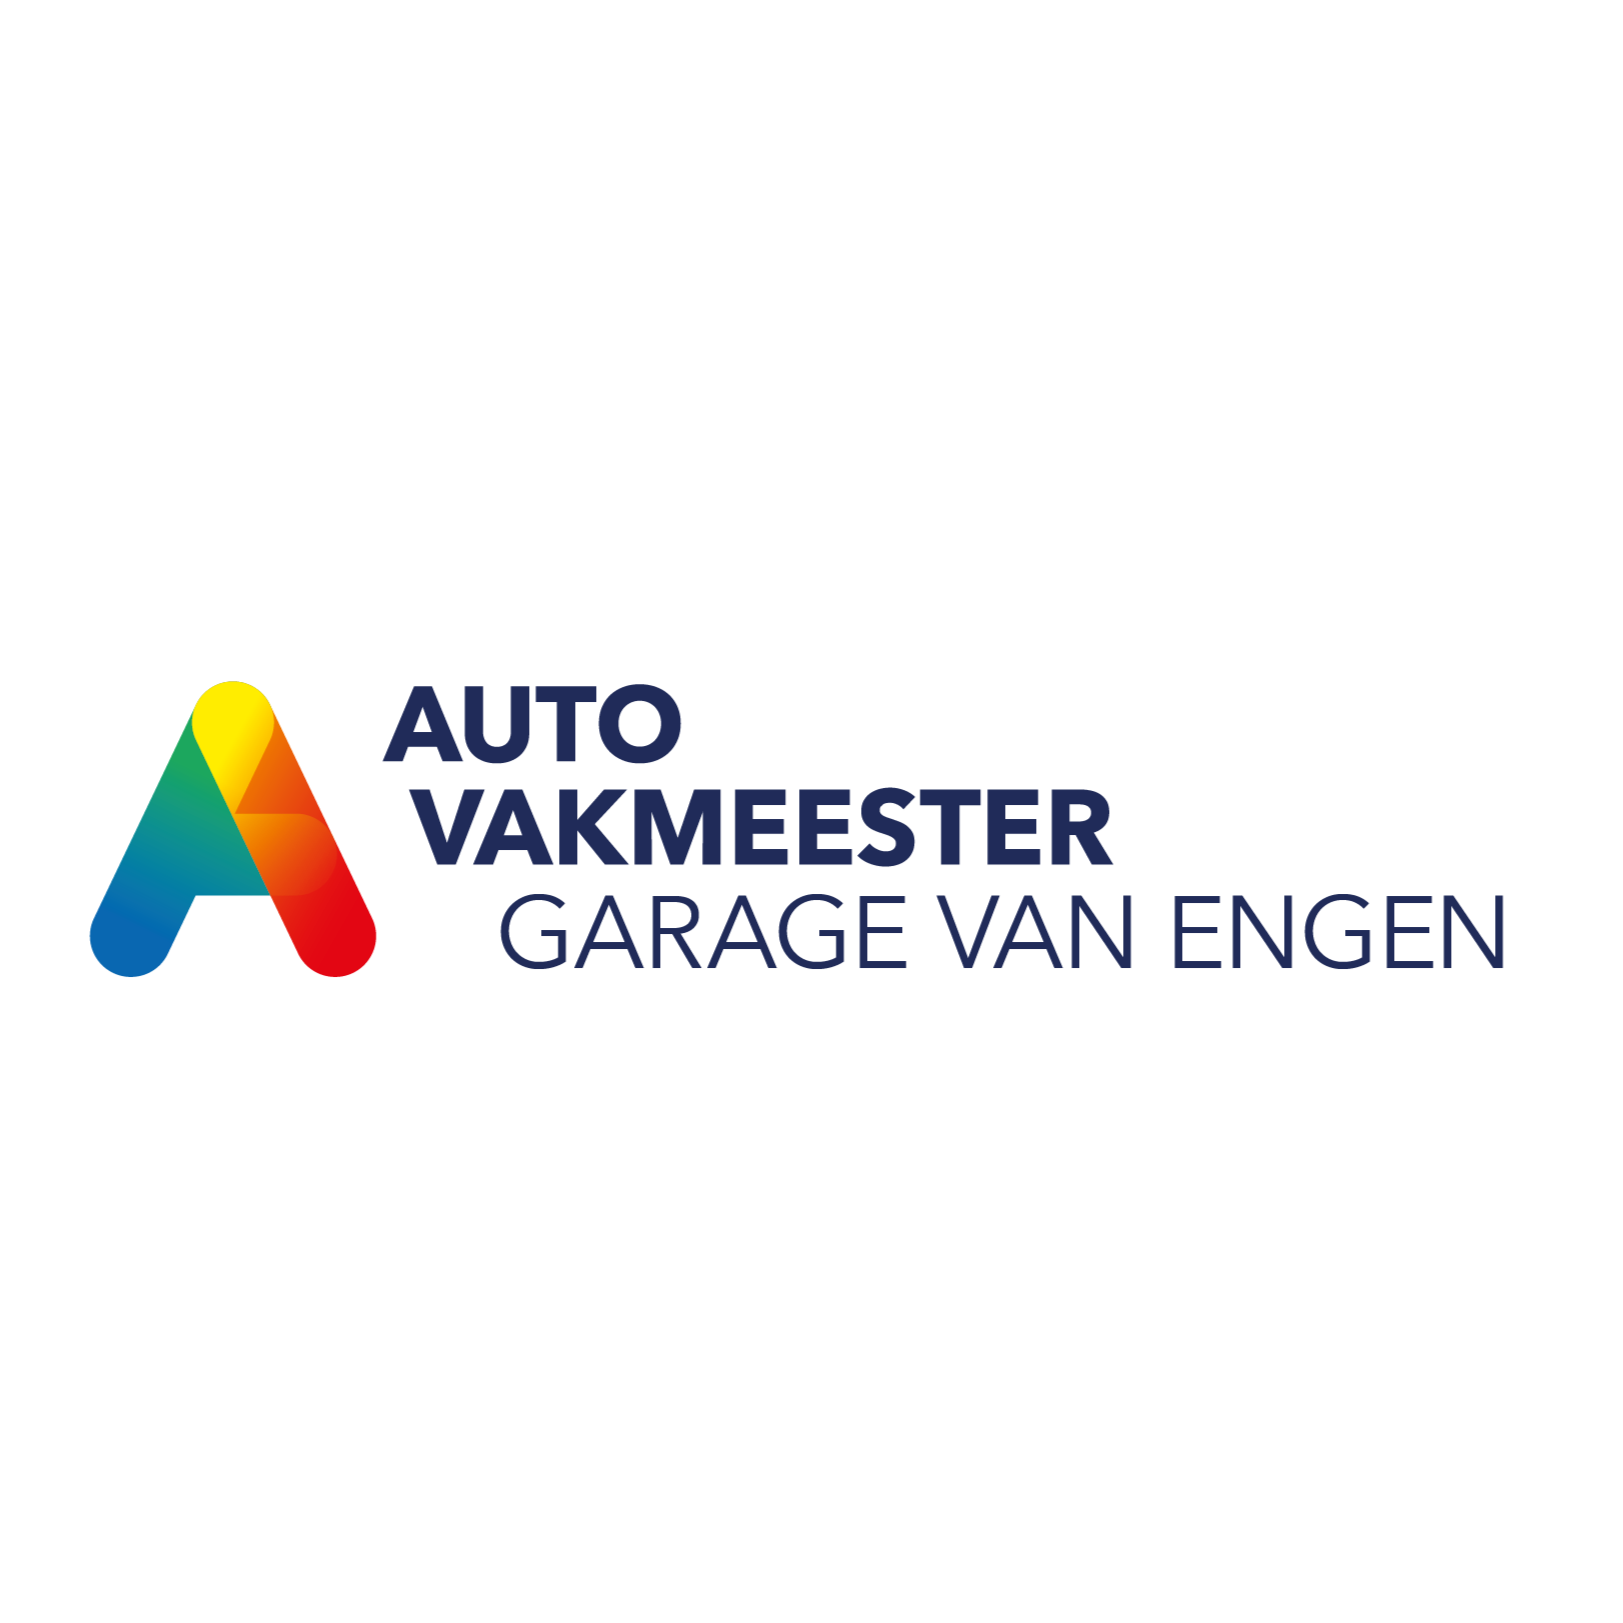 Autovakmeester Garage van Engen Logo